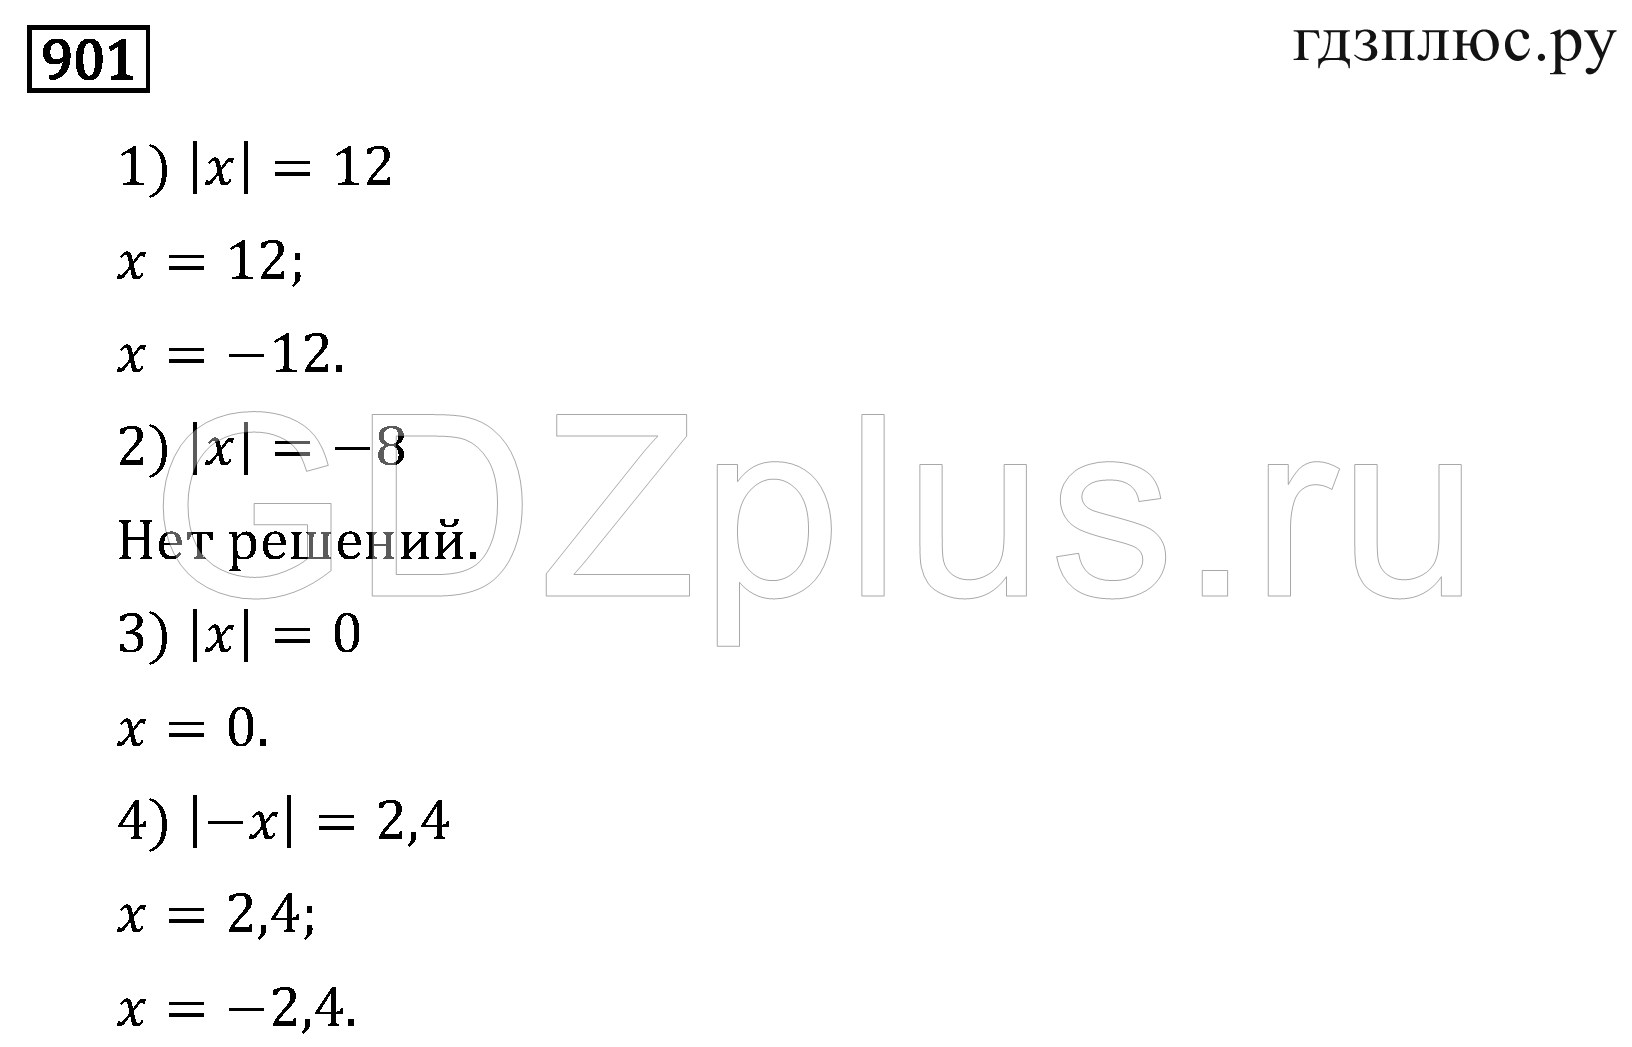 Математика 6 класс дедактитечский матерял чесноков. Мерзляк 6 класс номер 948 2017 стр 201.